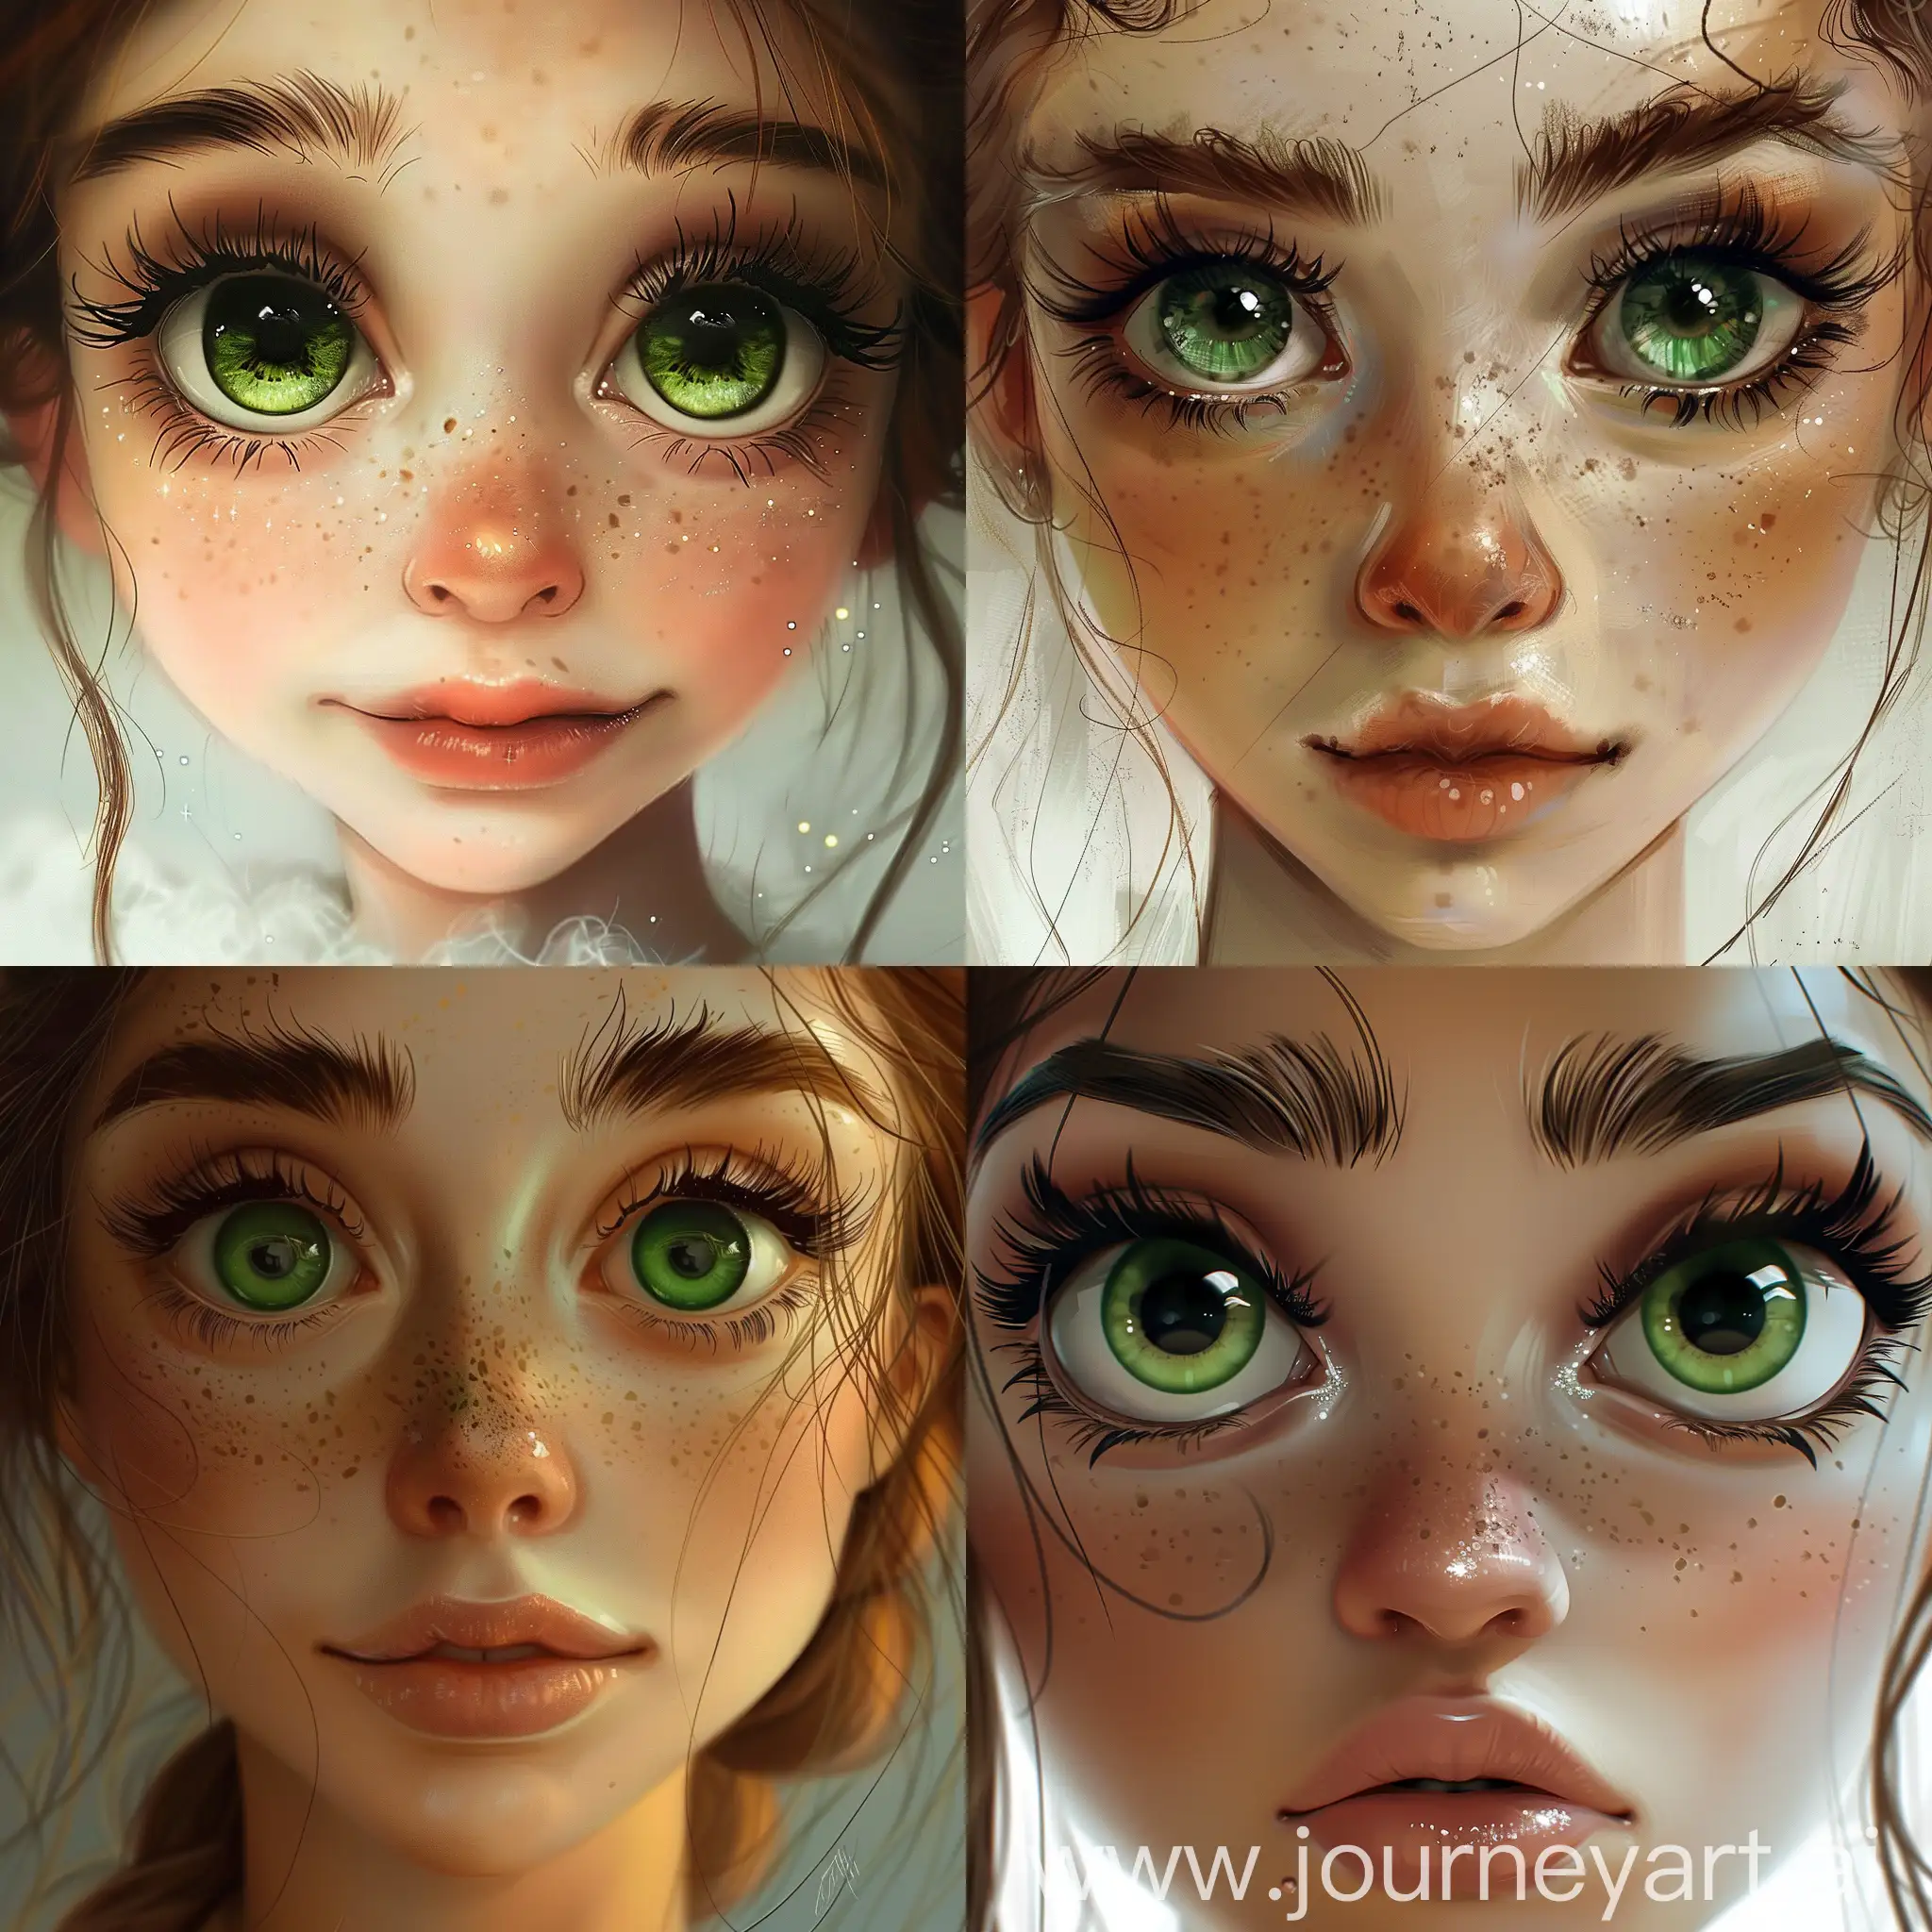 Девушка с большими зелеными глазами , с большим носом , маленьким подбородком и красивыми бровями с длинными ресницами